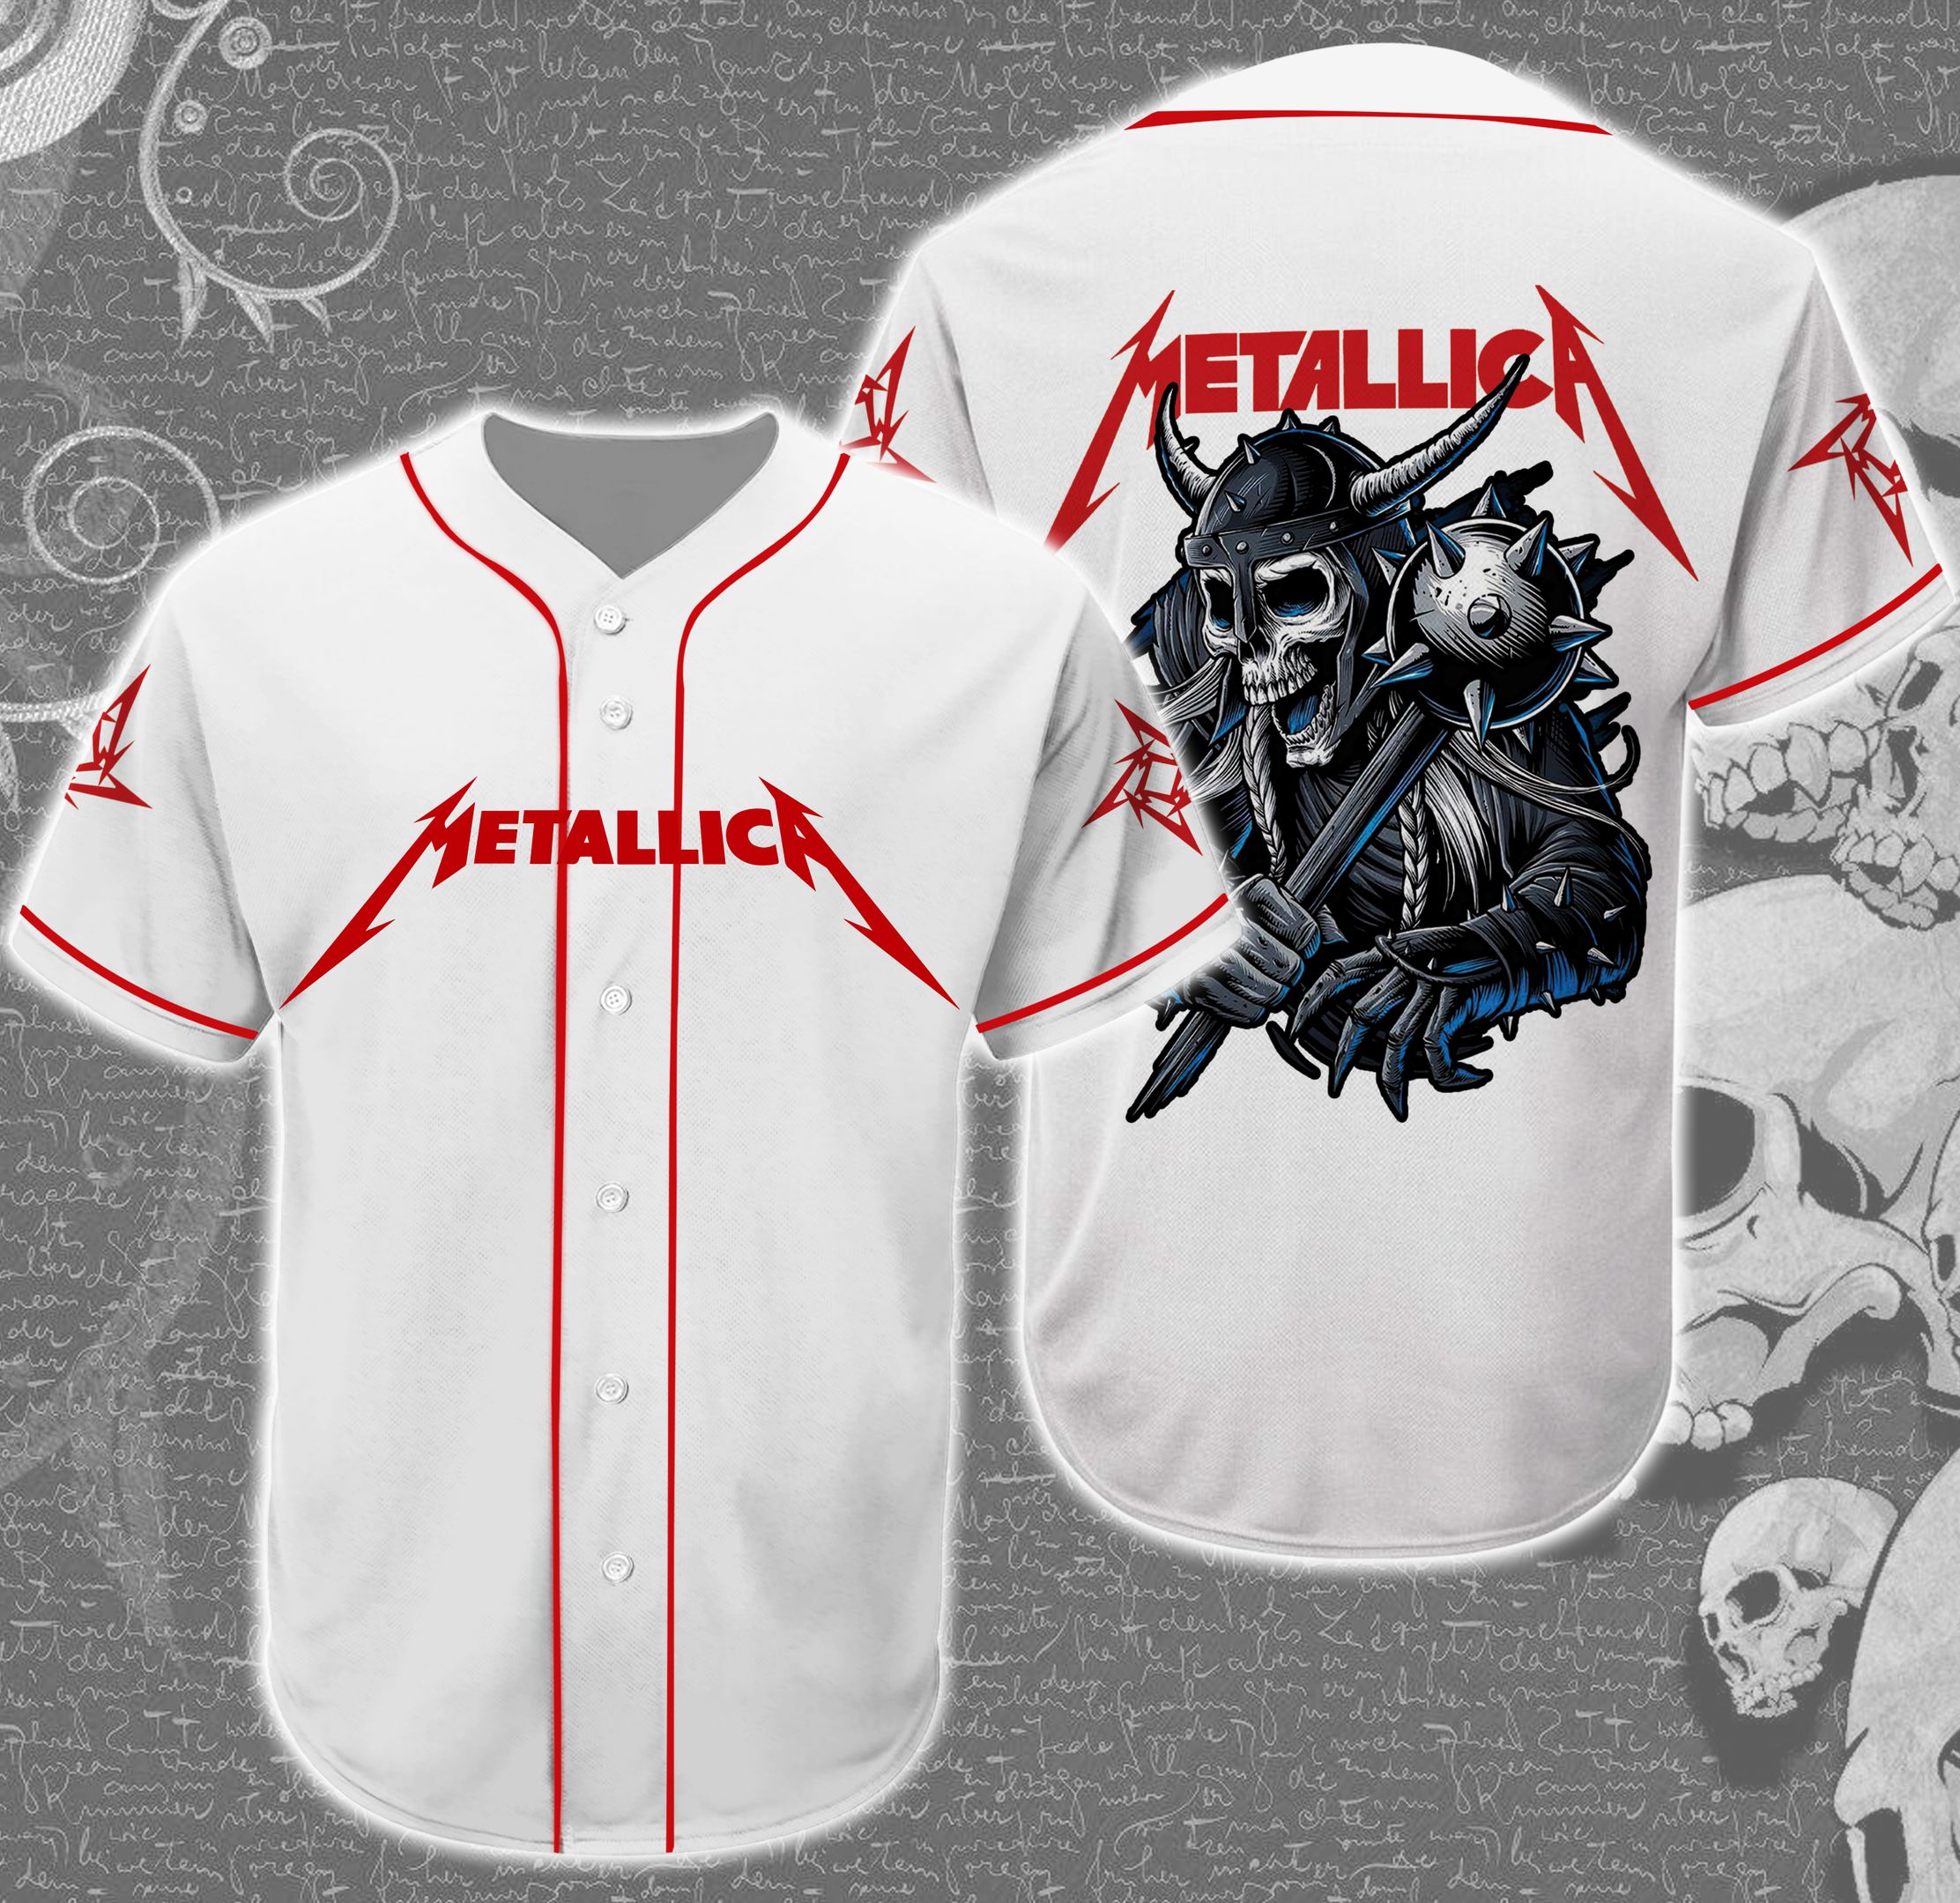 Band Metallica Skull Baseball Tee Jersey Shirt Unisex Men Women ...